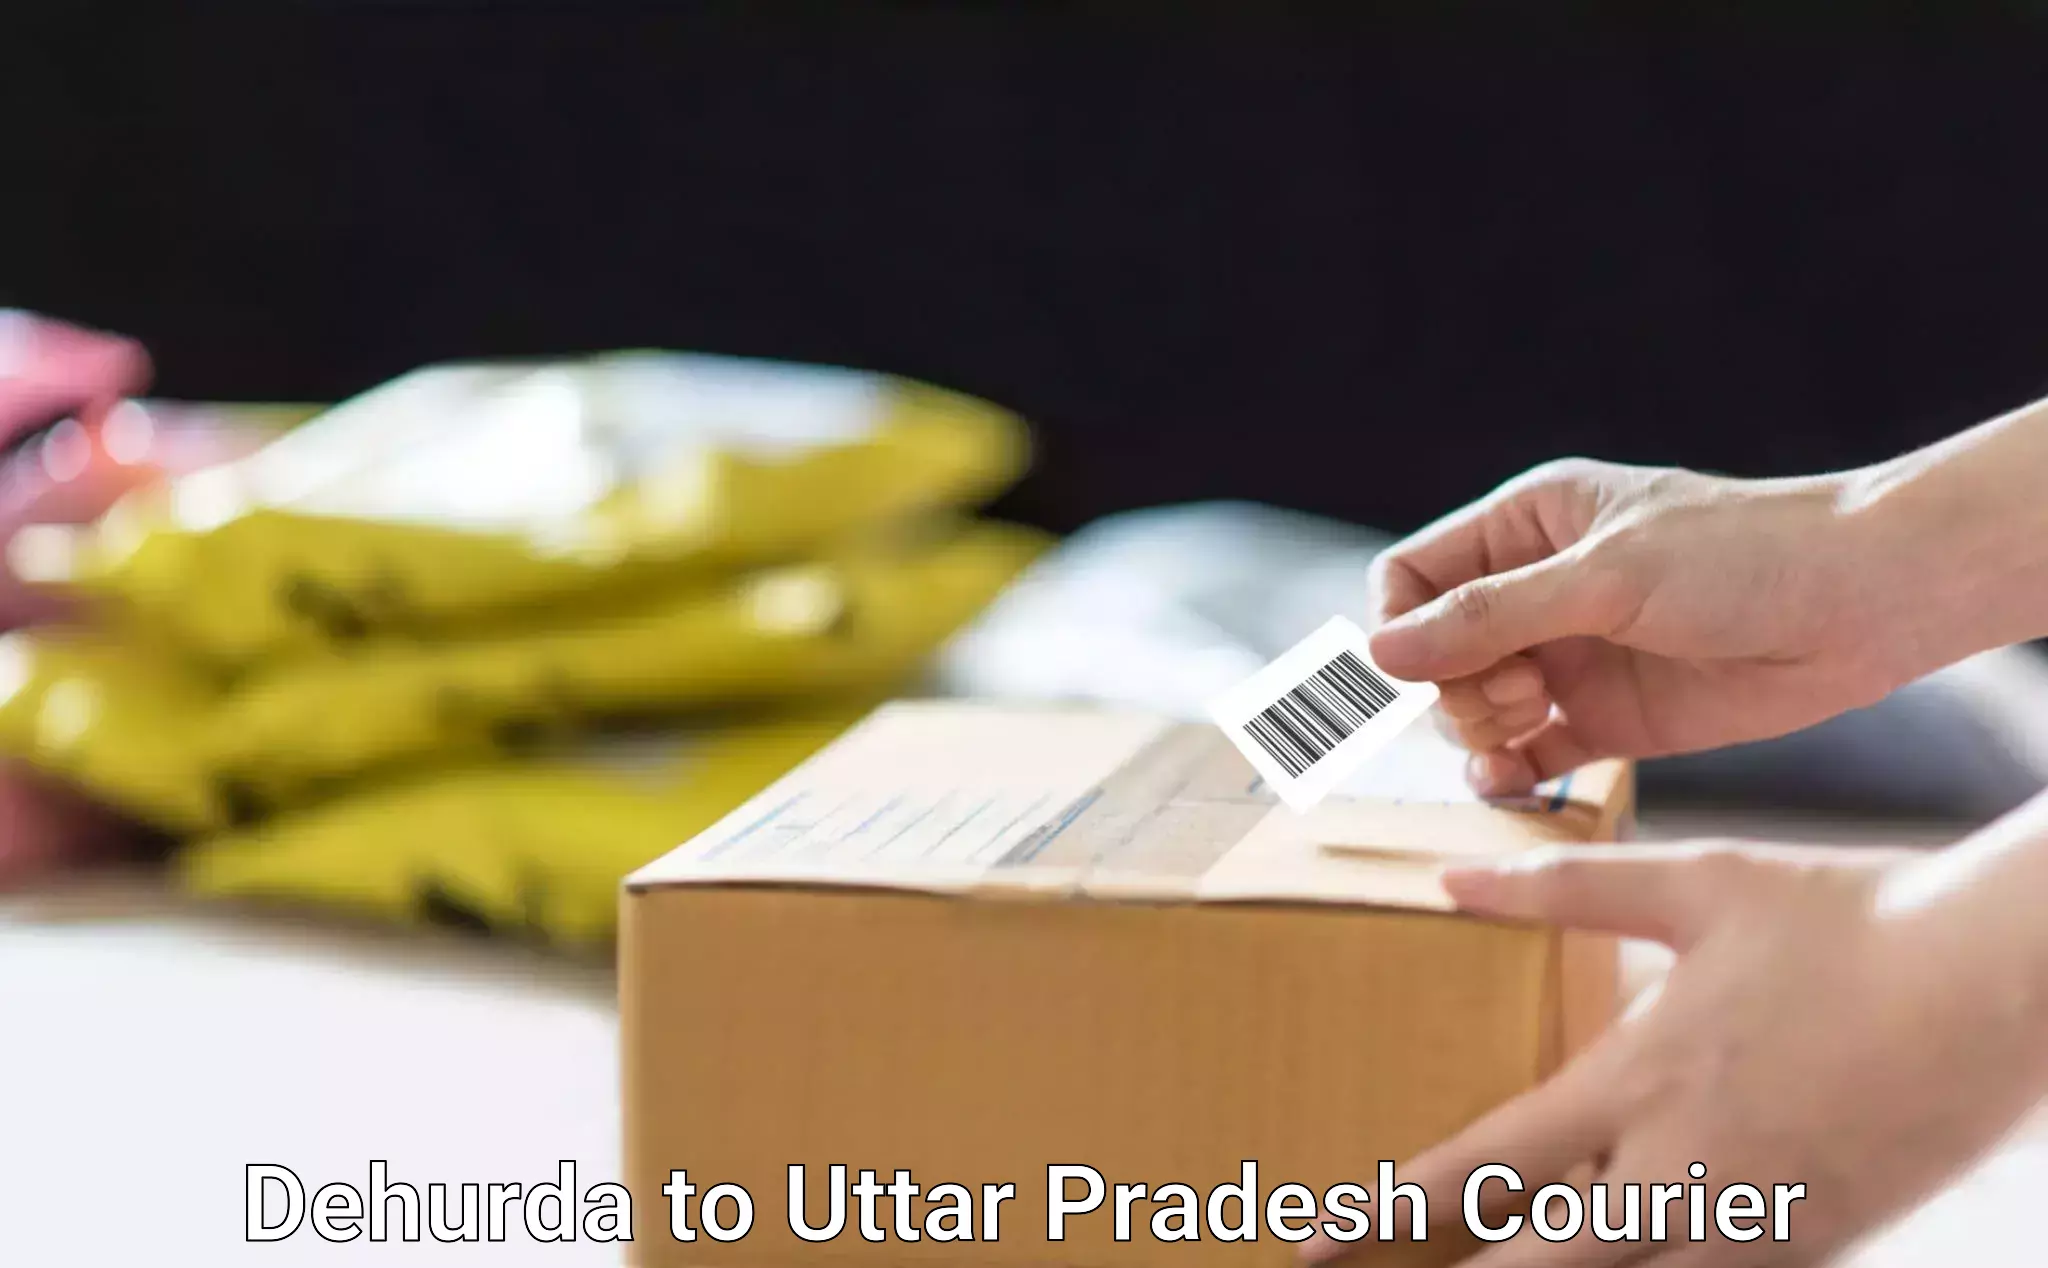 Reliable parcel services Dehurda to Uttar Pradesh